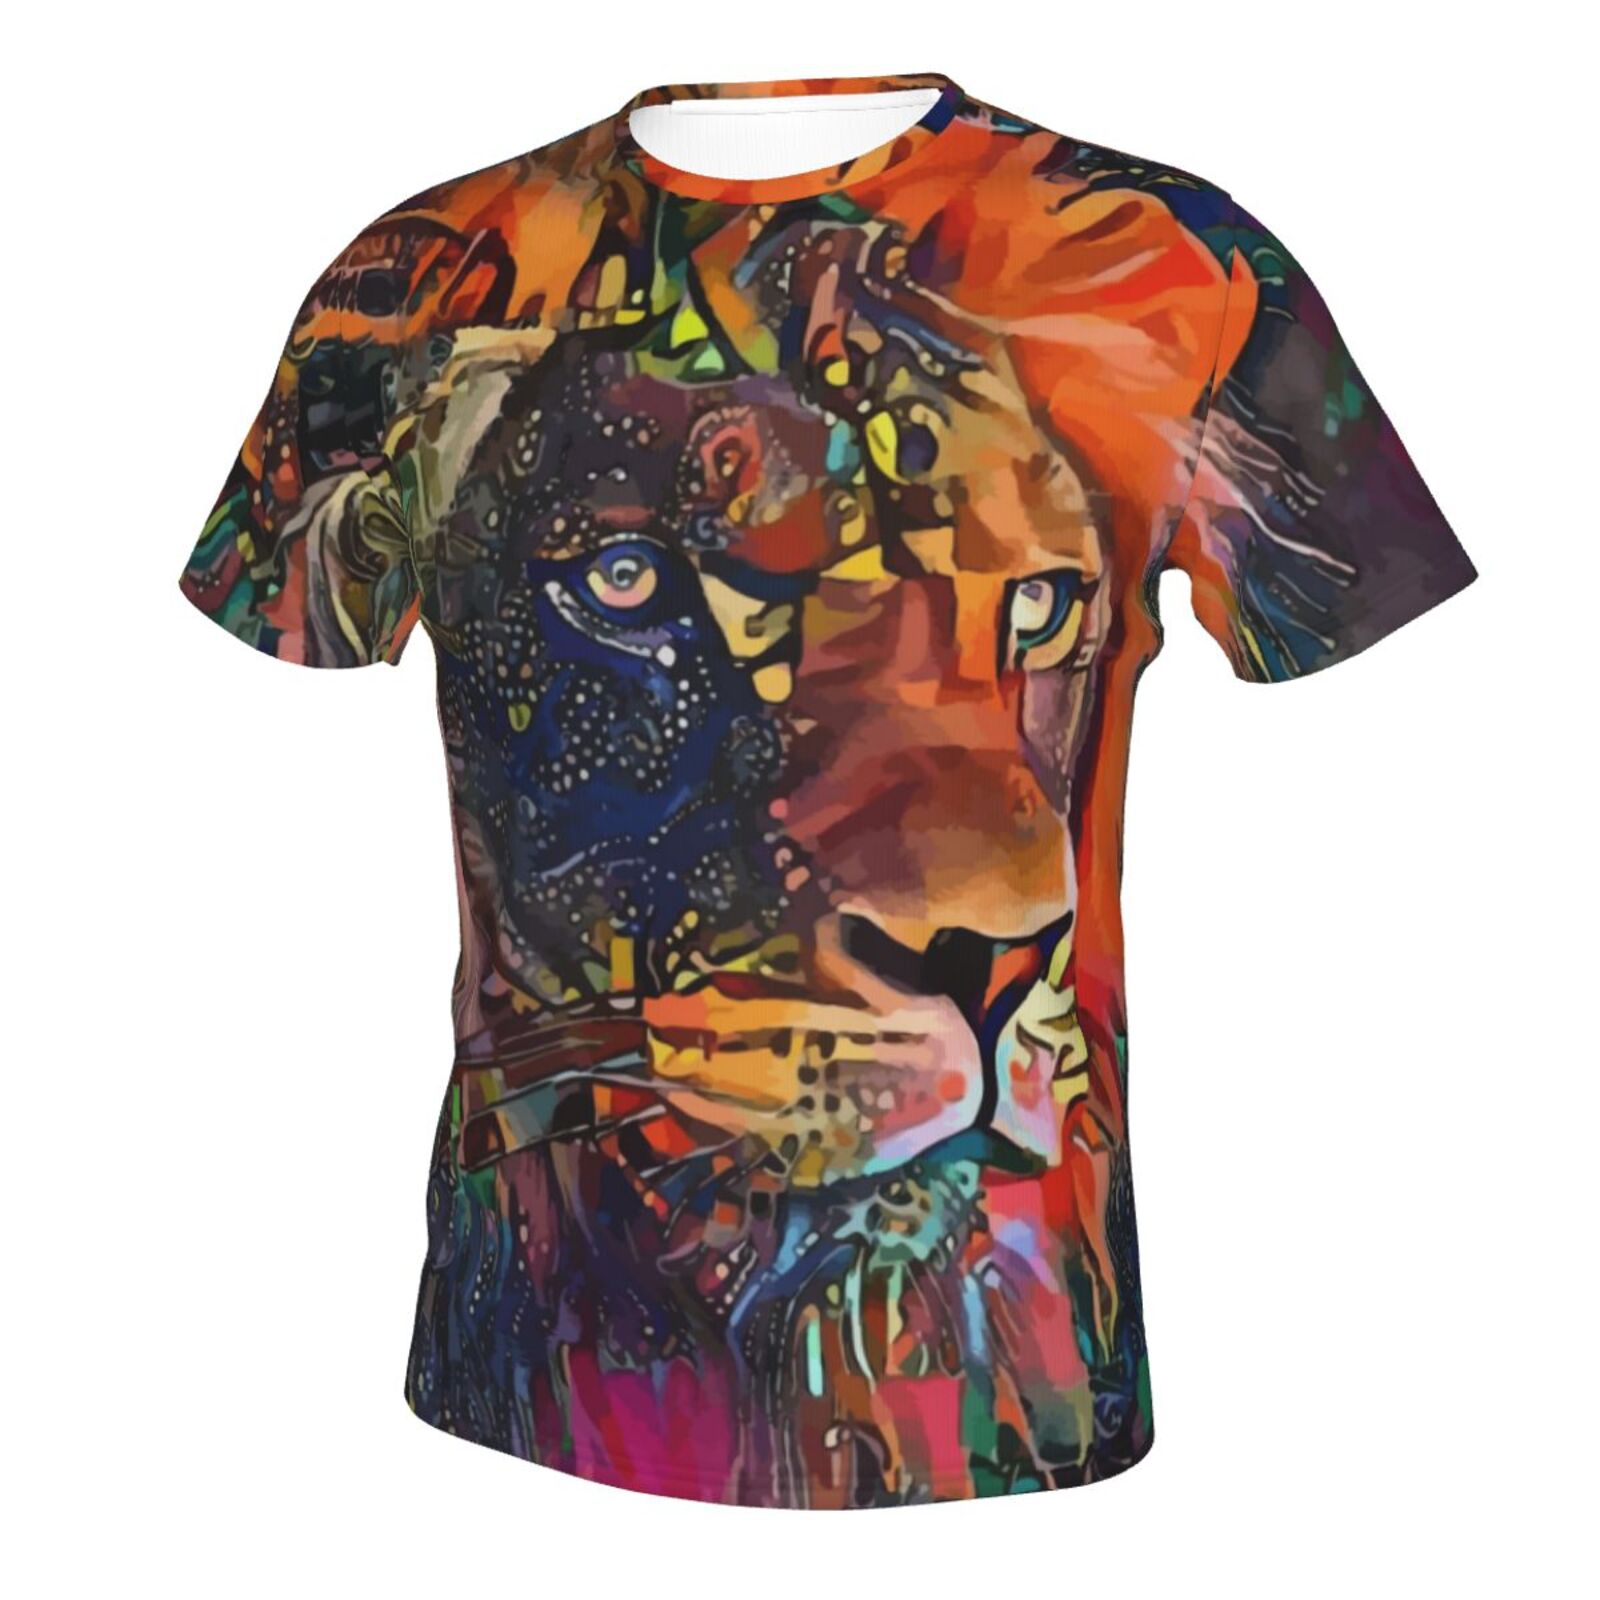 Nirkos Lion Blandet Medieelementer Klassisk T-shirt